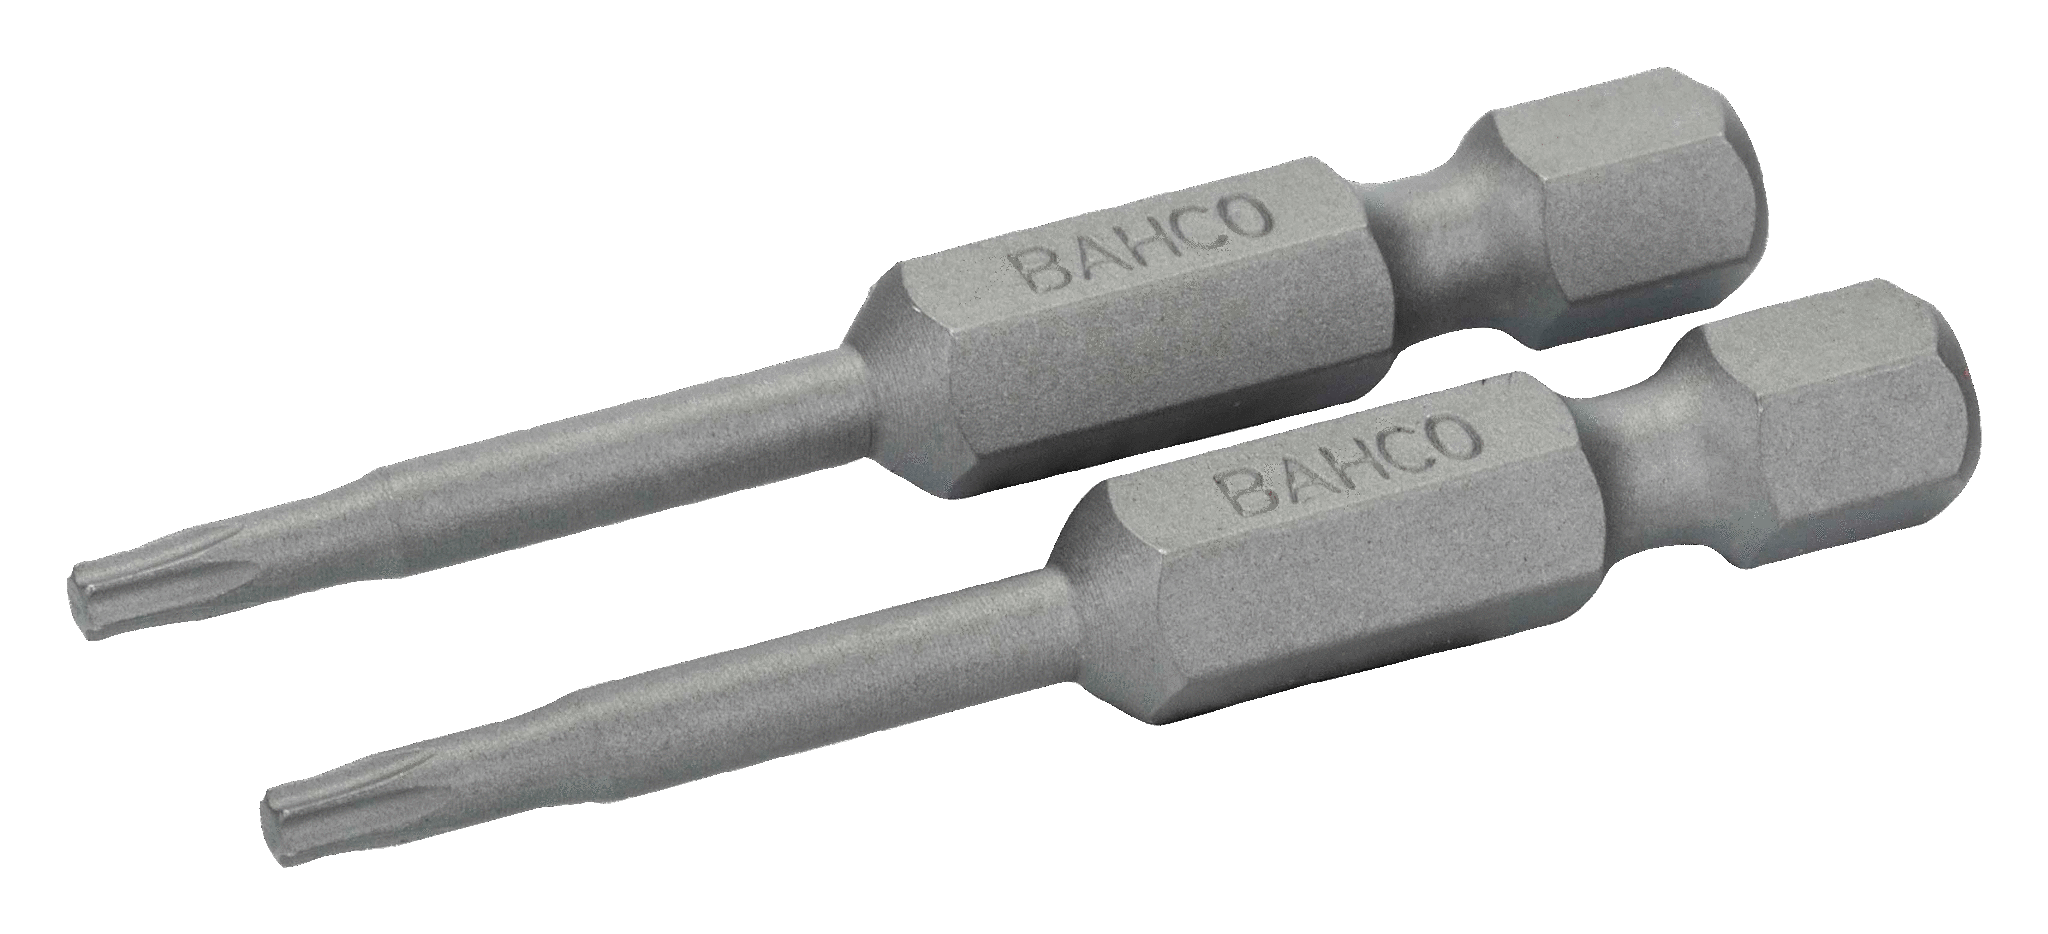 картинка Стандартные биты для отверток Torx®, 50 мм BAHCO 59S/50T30 от магазина "Элит-инструмент"